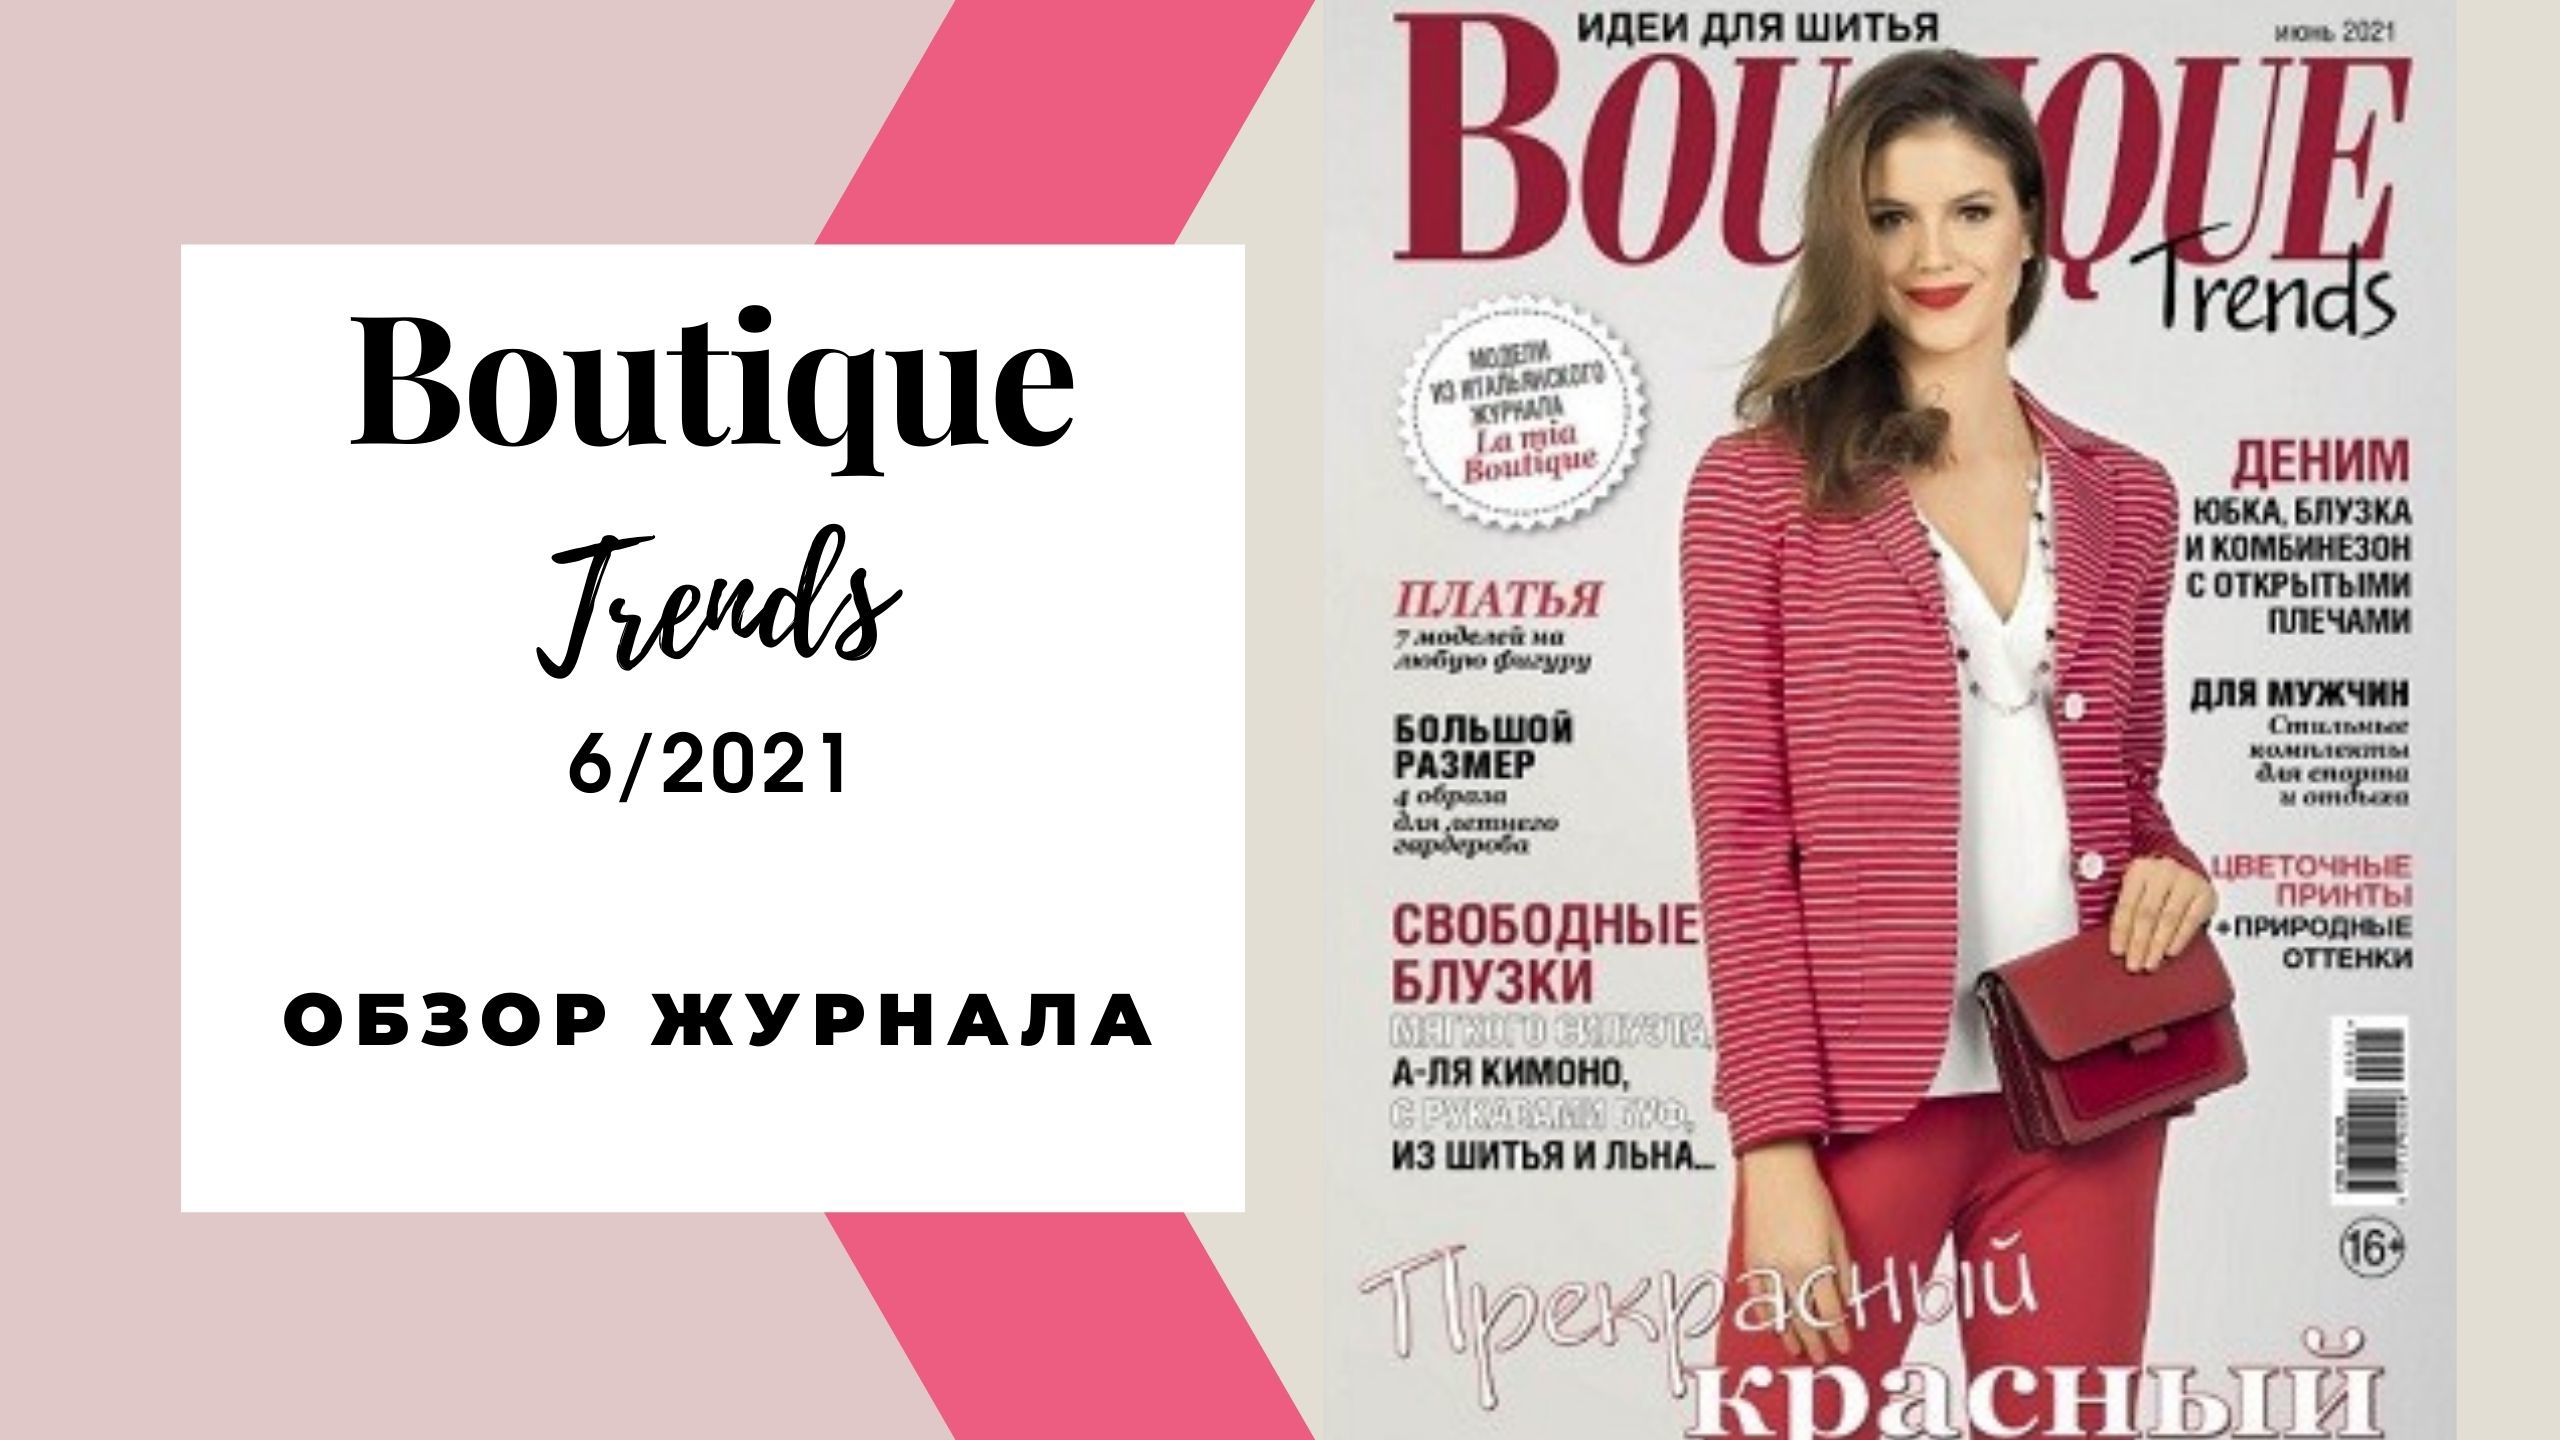 Журнал итальянской моды boutique. Boutique журнал 2021. Журнал Boutique trends. Бутик июнь 2021 журнал. Бутик обзор журнала.